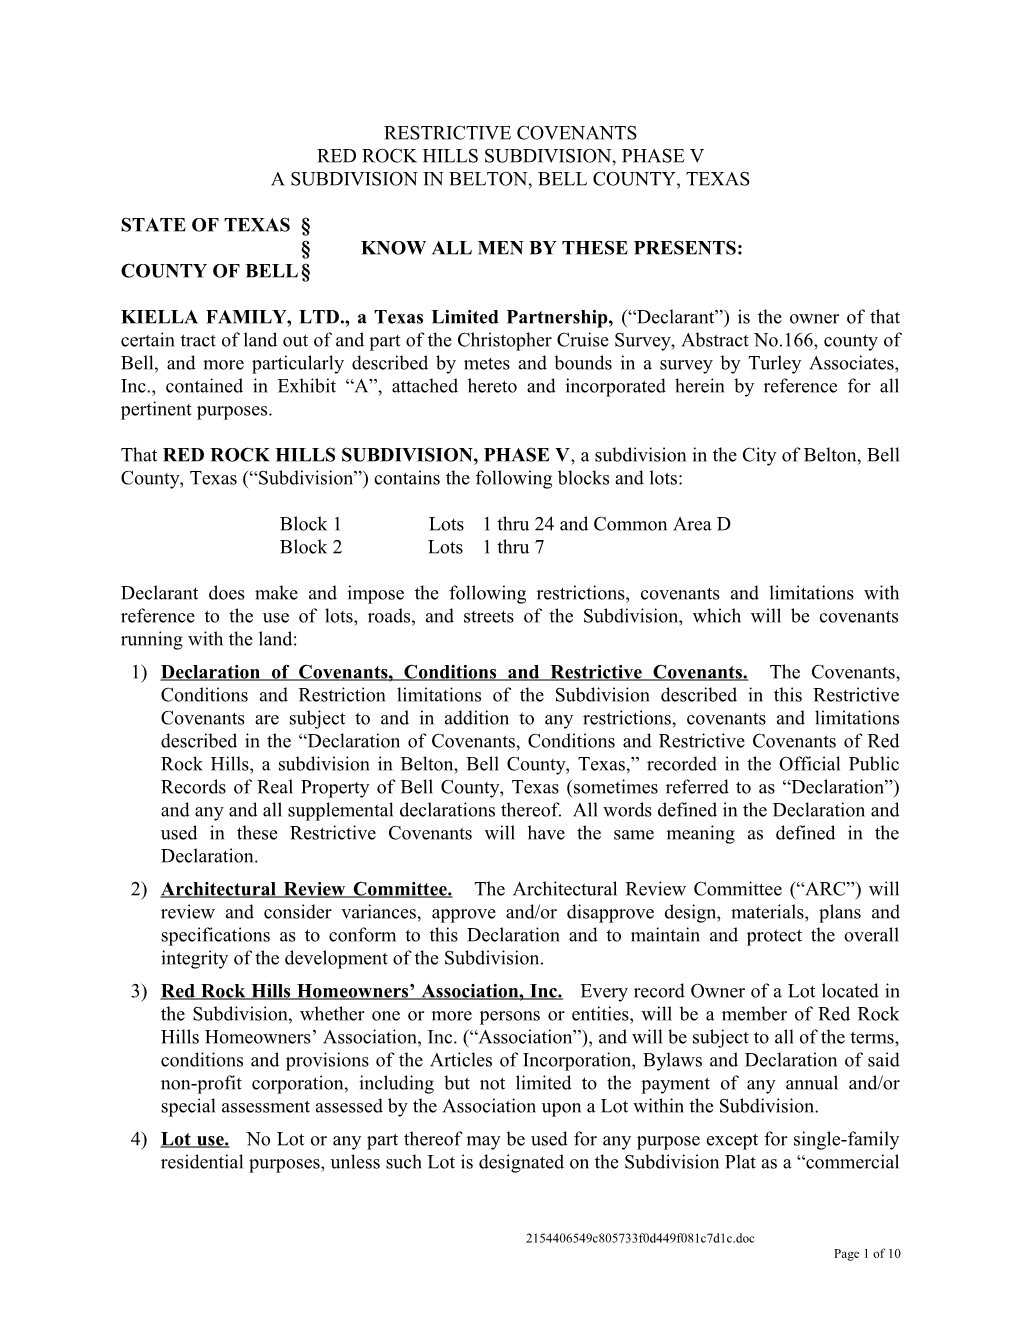 POA & Subdivision - Restrictive Covenants (00174347;1)